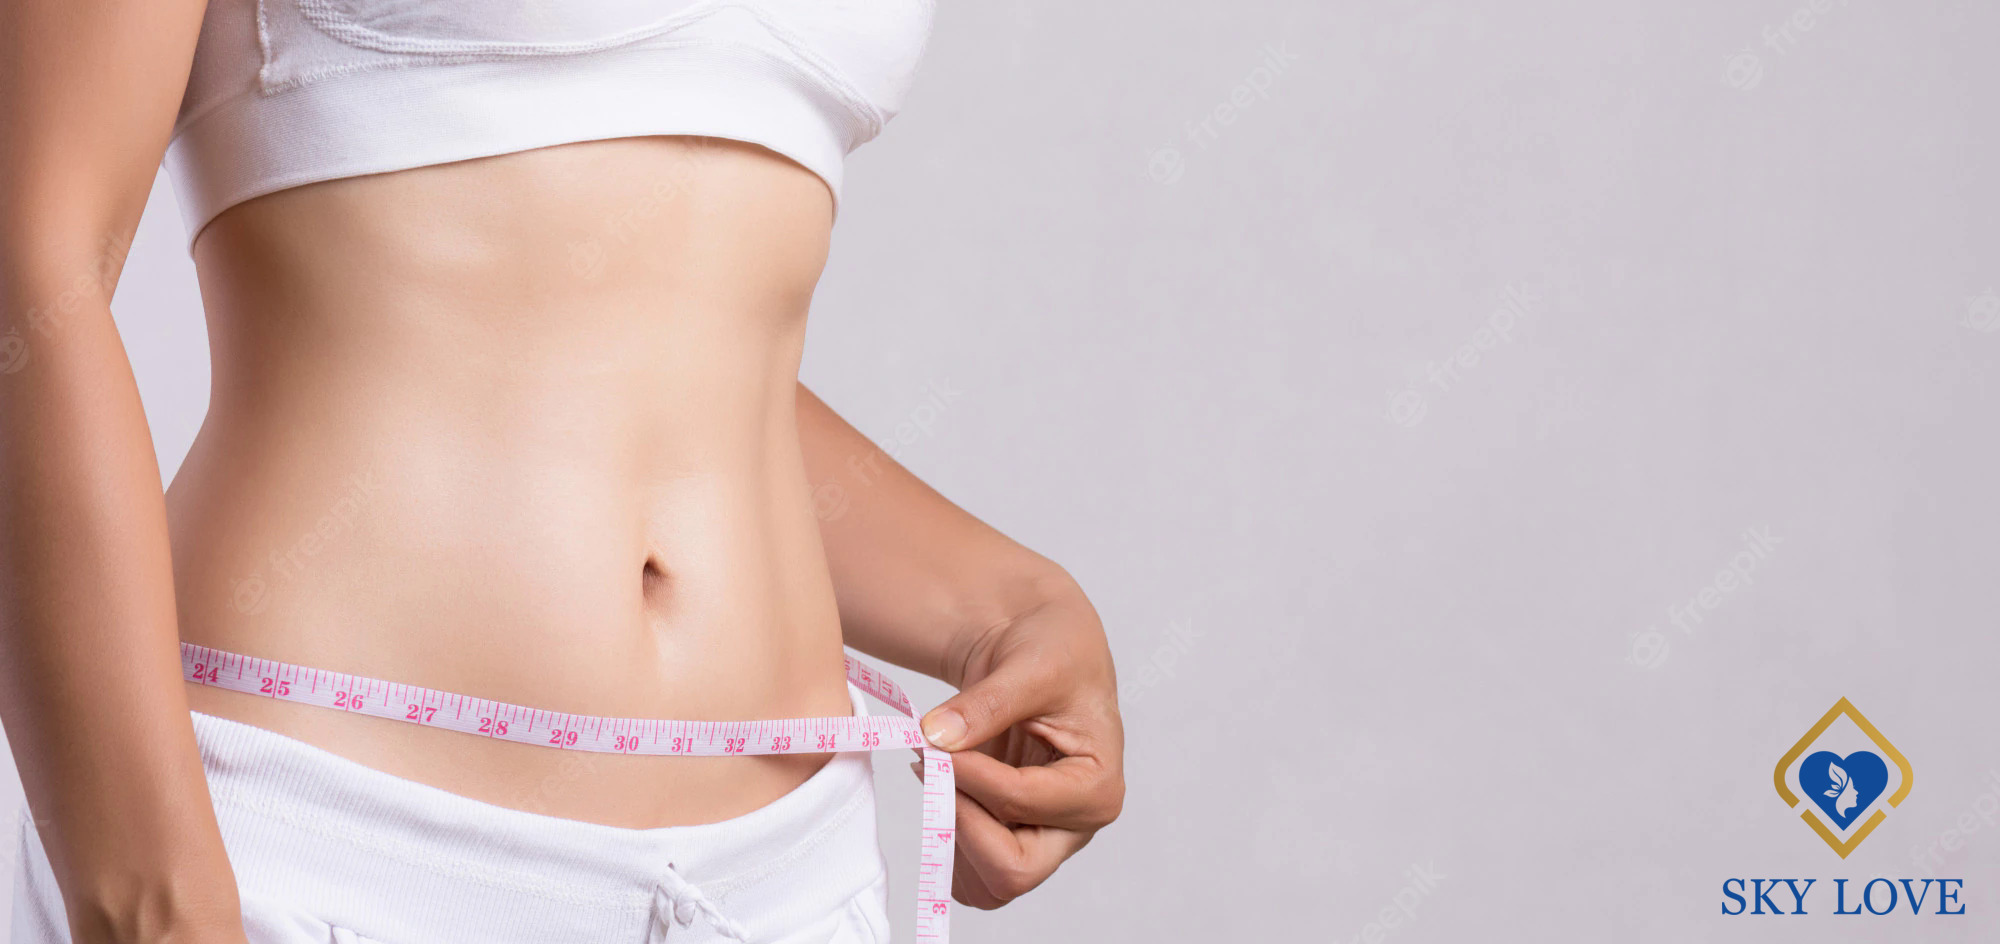 Những cách giảm mỡ bụng nhanh nhất trong 3 ngày hiệu quả